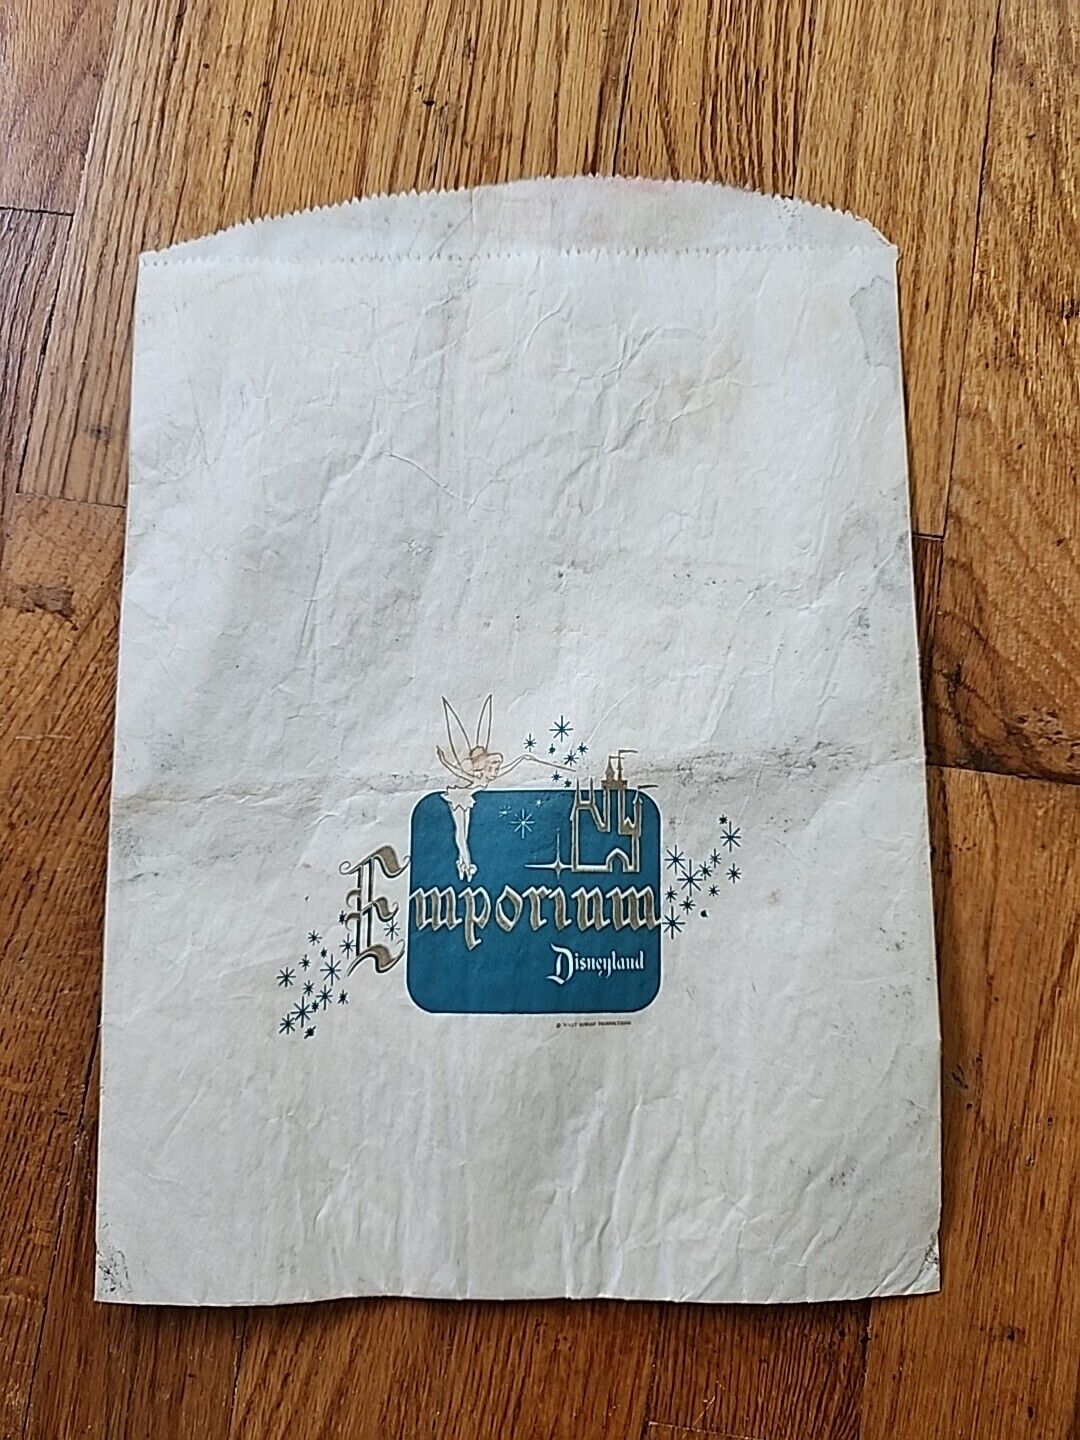 Disneyland Emporium Opening Day 1955 Paper Bag Rare